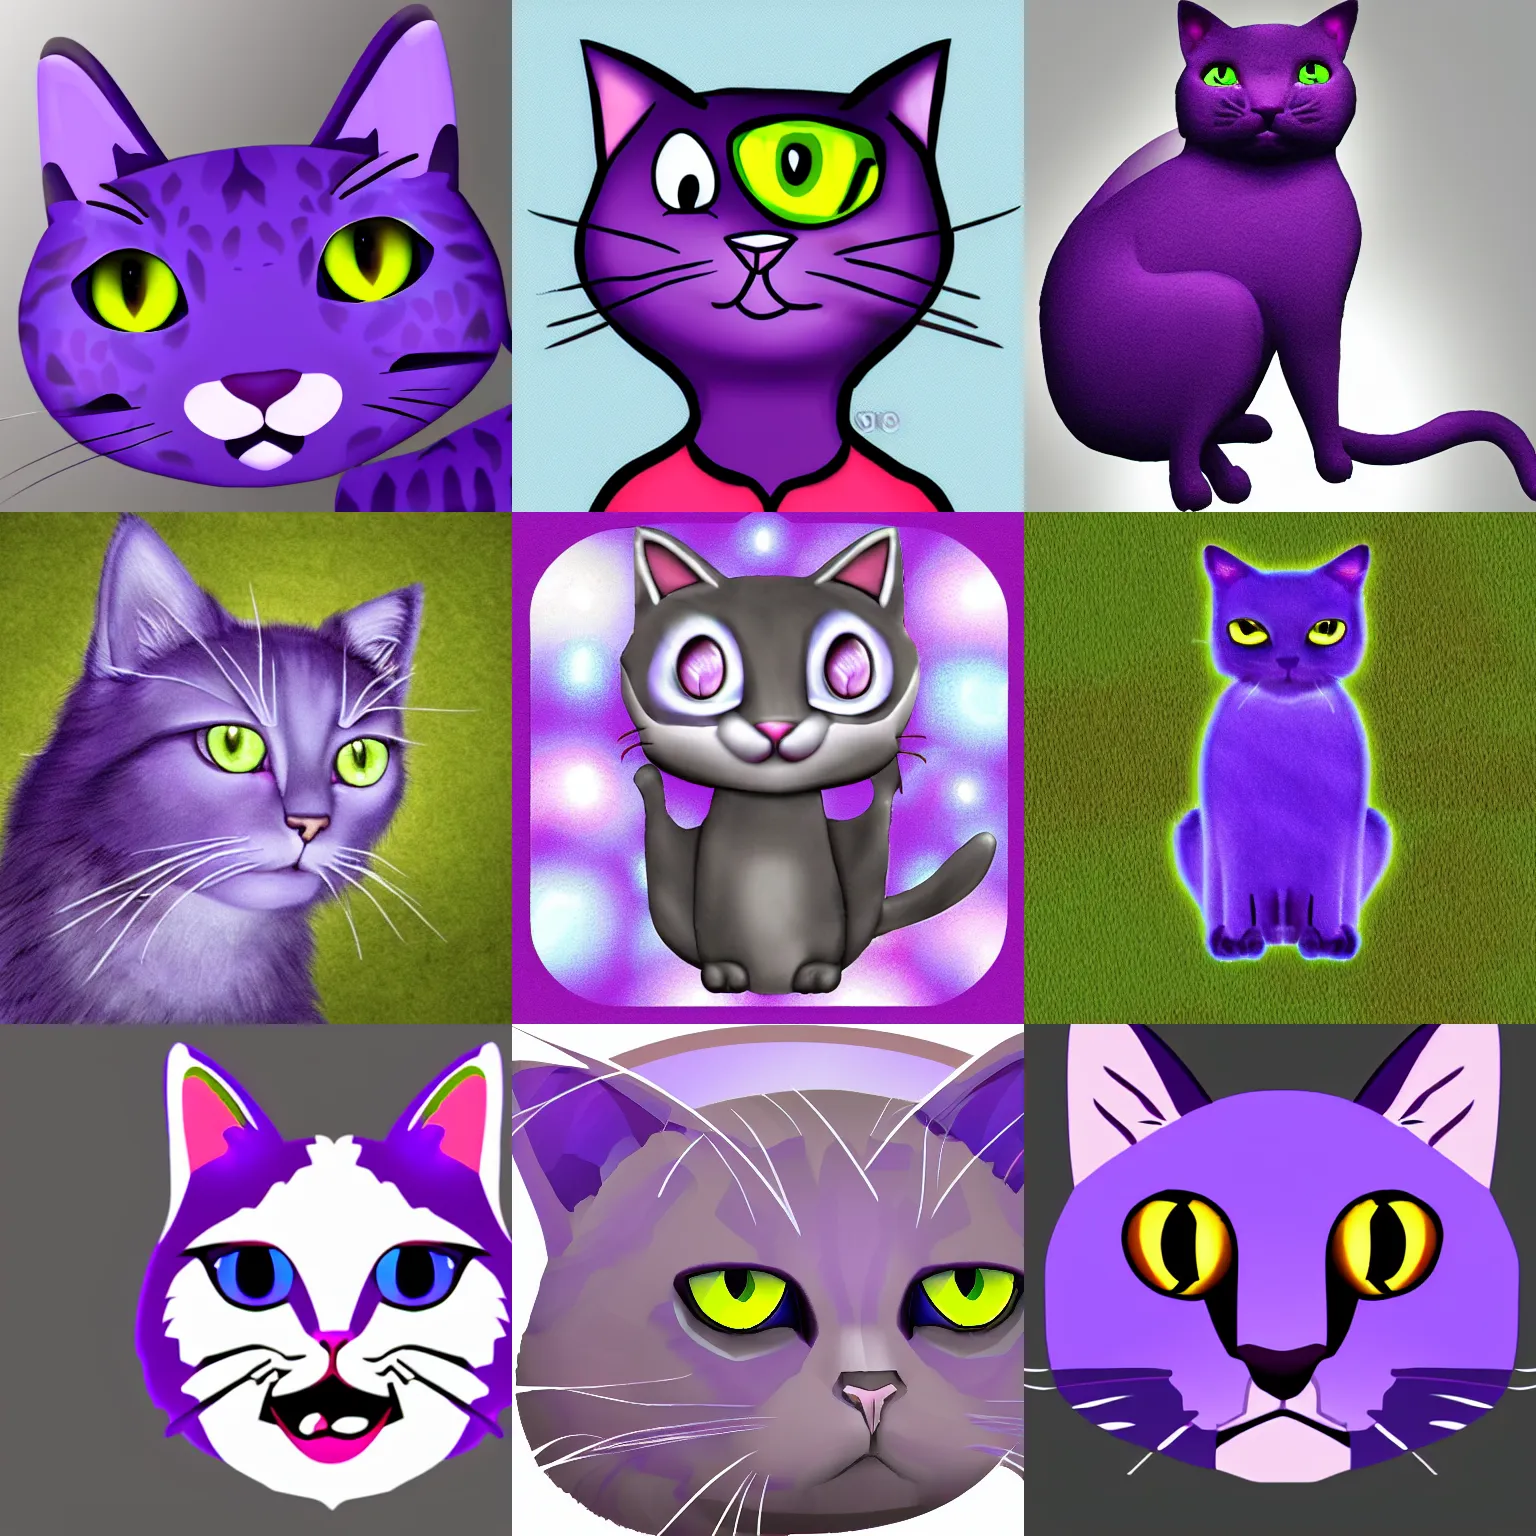 Prompt: purple cat avatar image